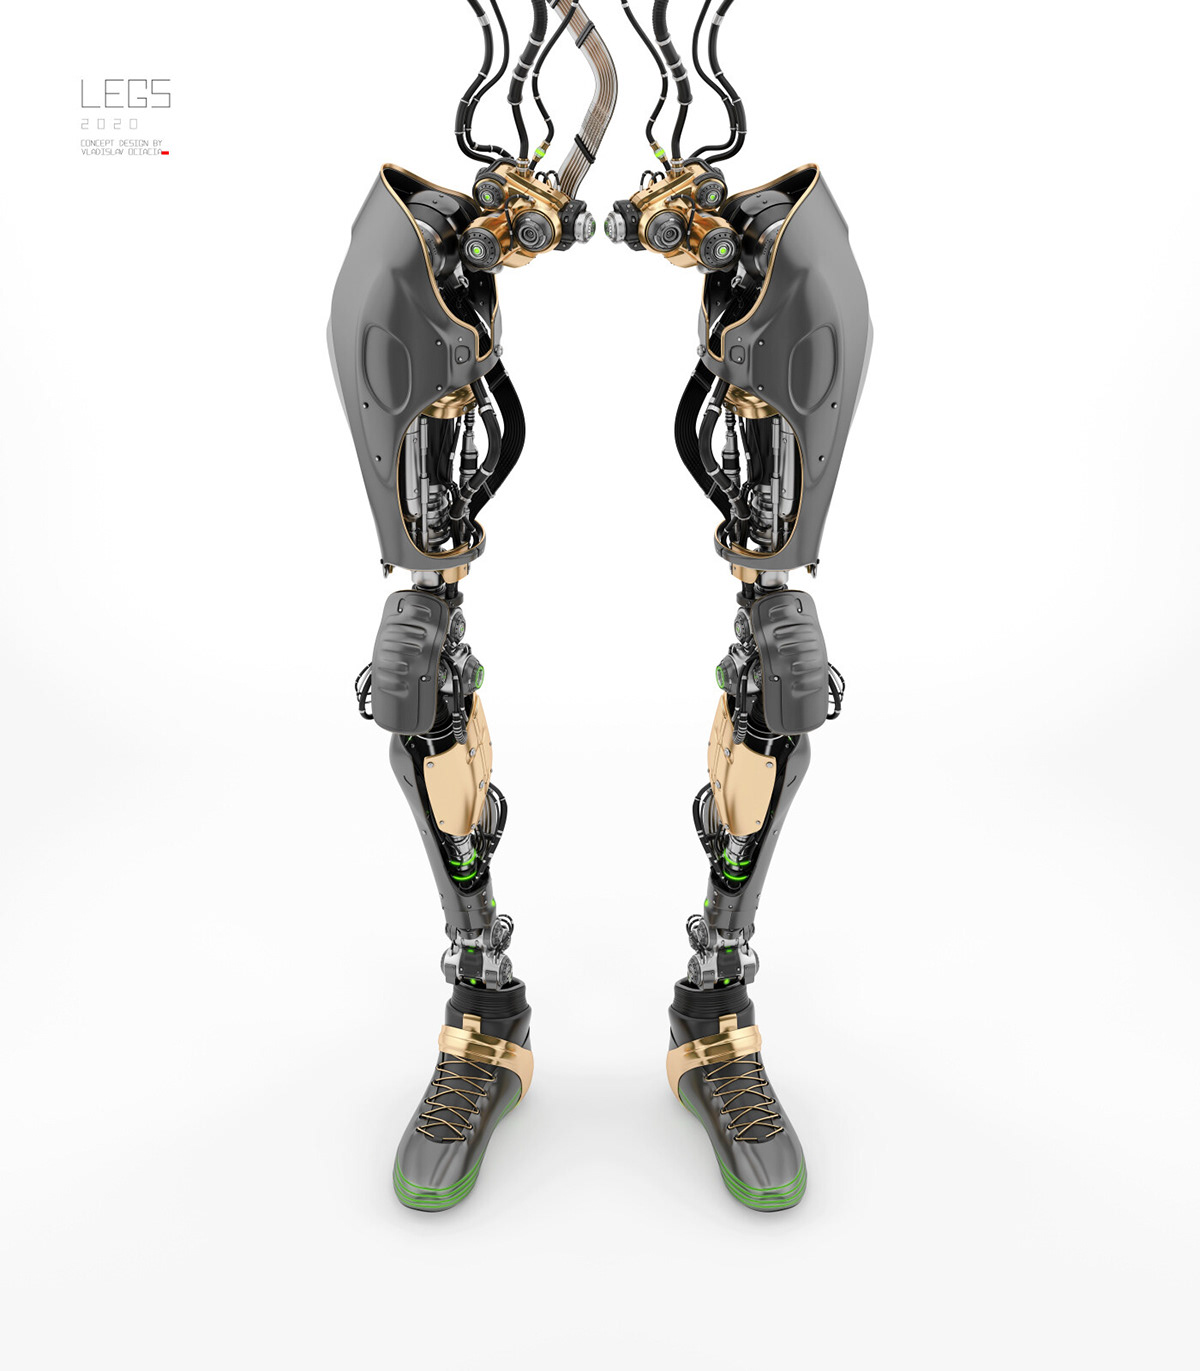 legs——超酷的机械腿模型,科技感十足!